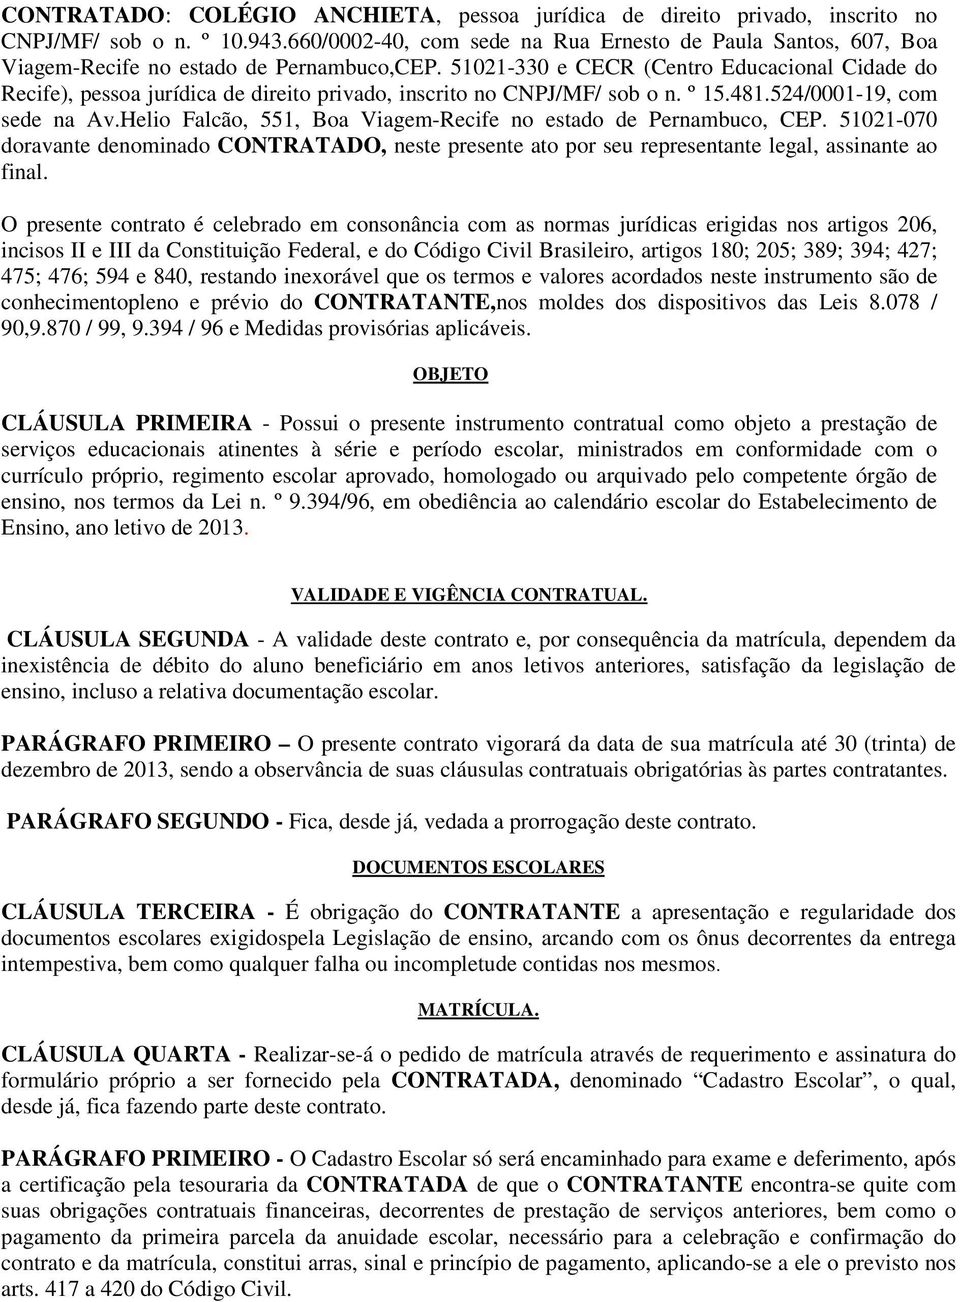 51021-330 e CECR (Centro Educacional Cidade do Recife), pessoa jurídica de direito privado, inscrito no CNPJ/MF/ sob o n. º 15.481.524/0001-19, com sede na Av.